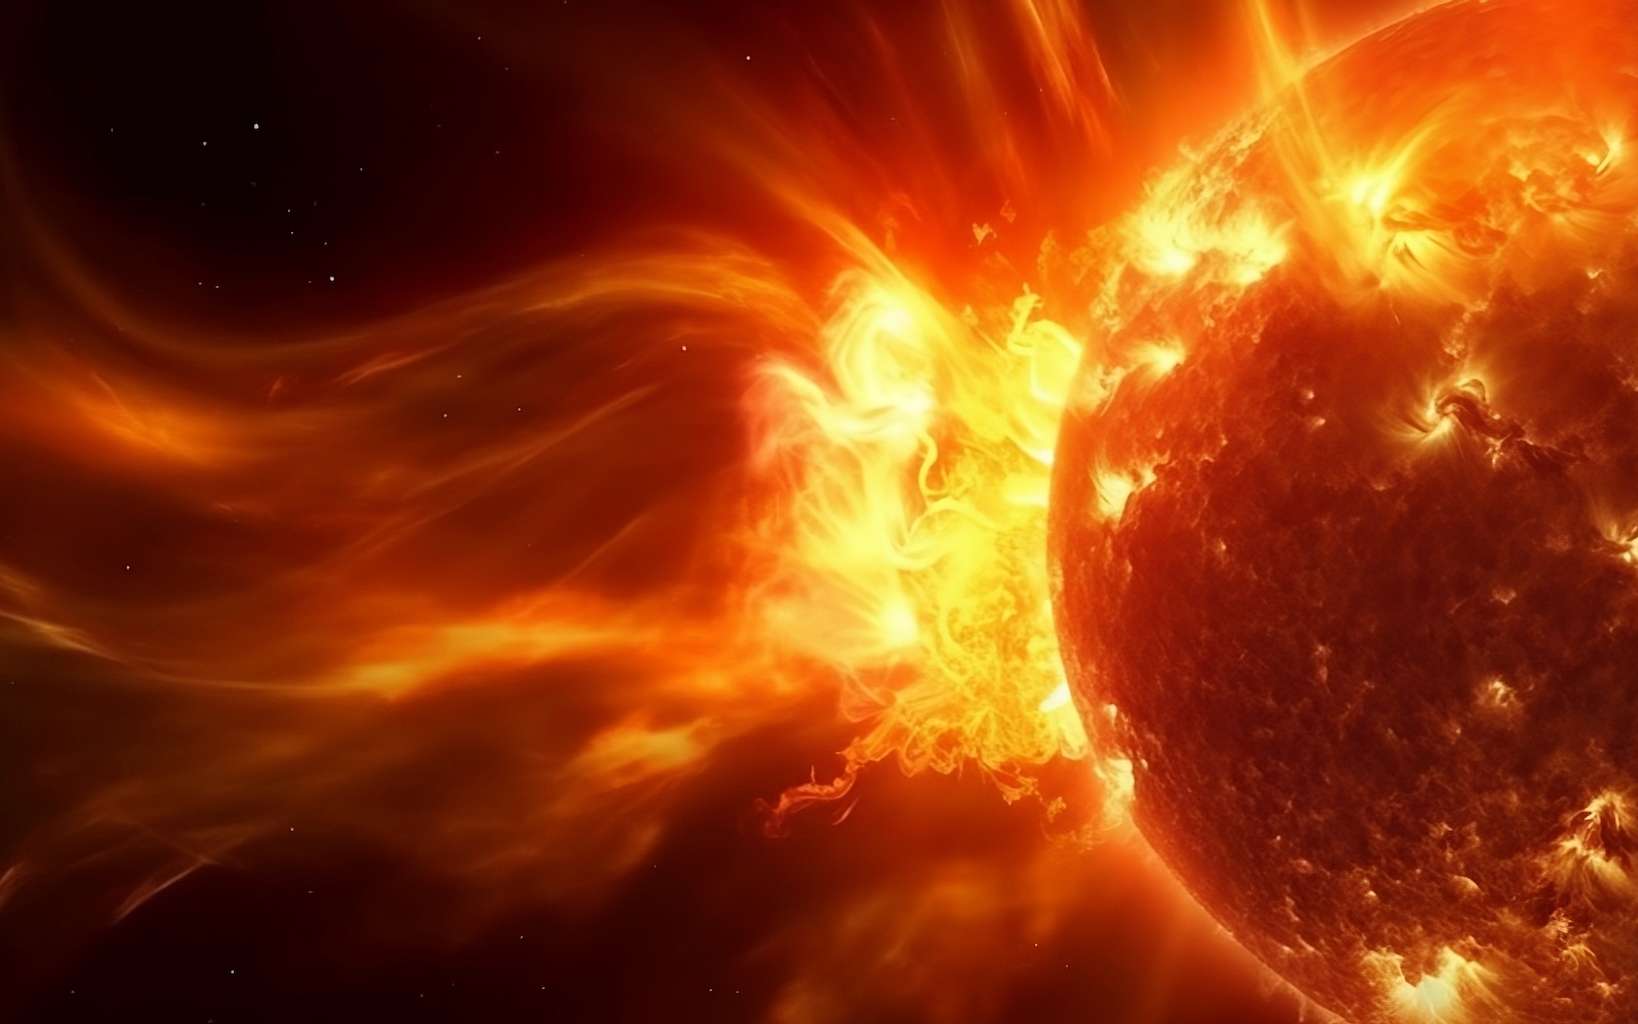 Le pic d'activité du Soleil va arriver plus tôt que prévu et sera explosif, annoncent les experts